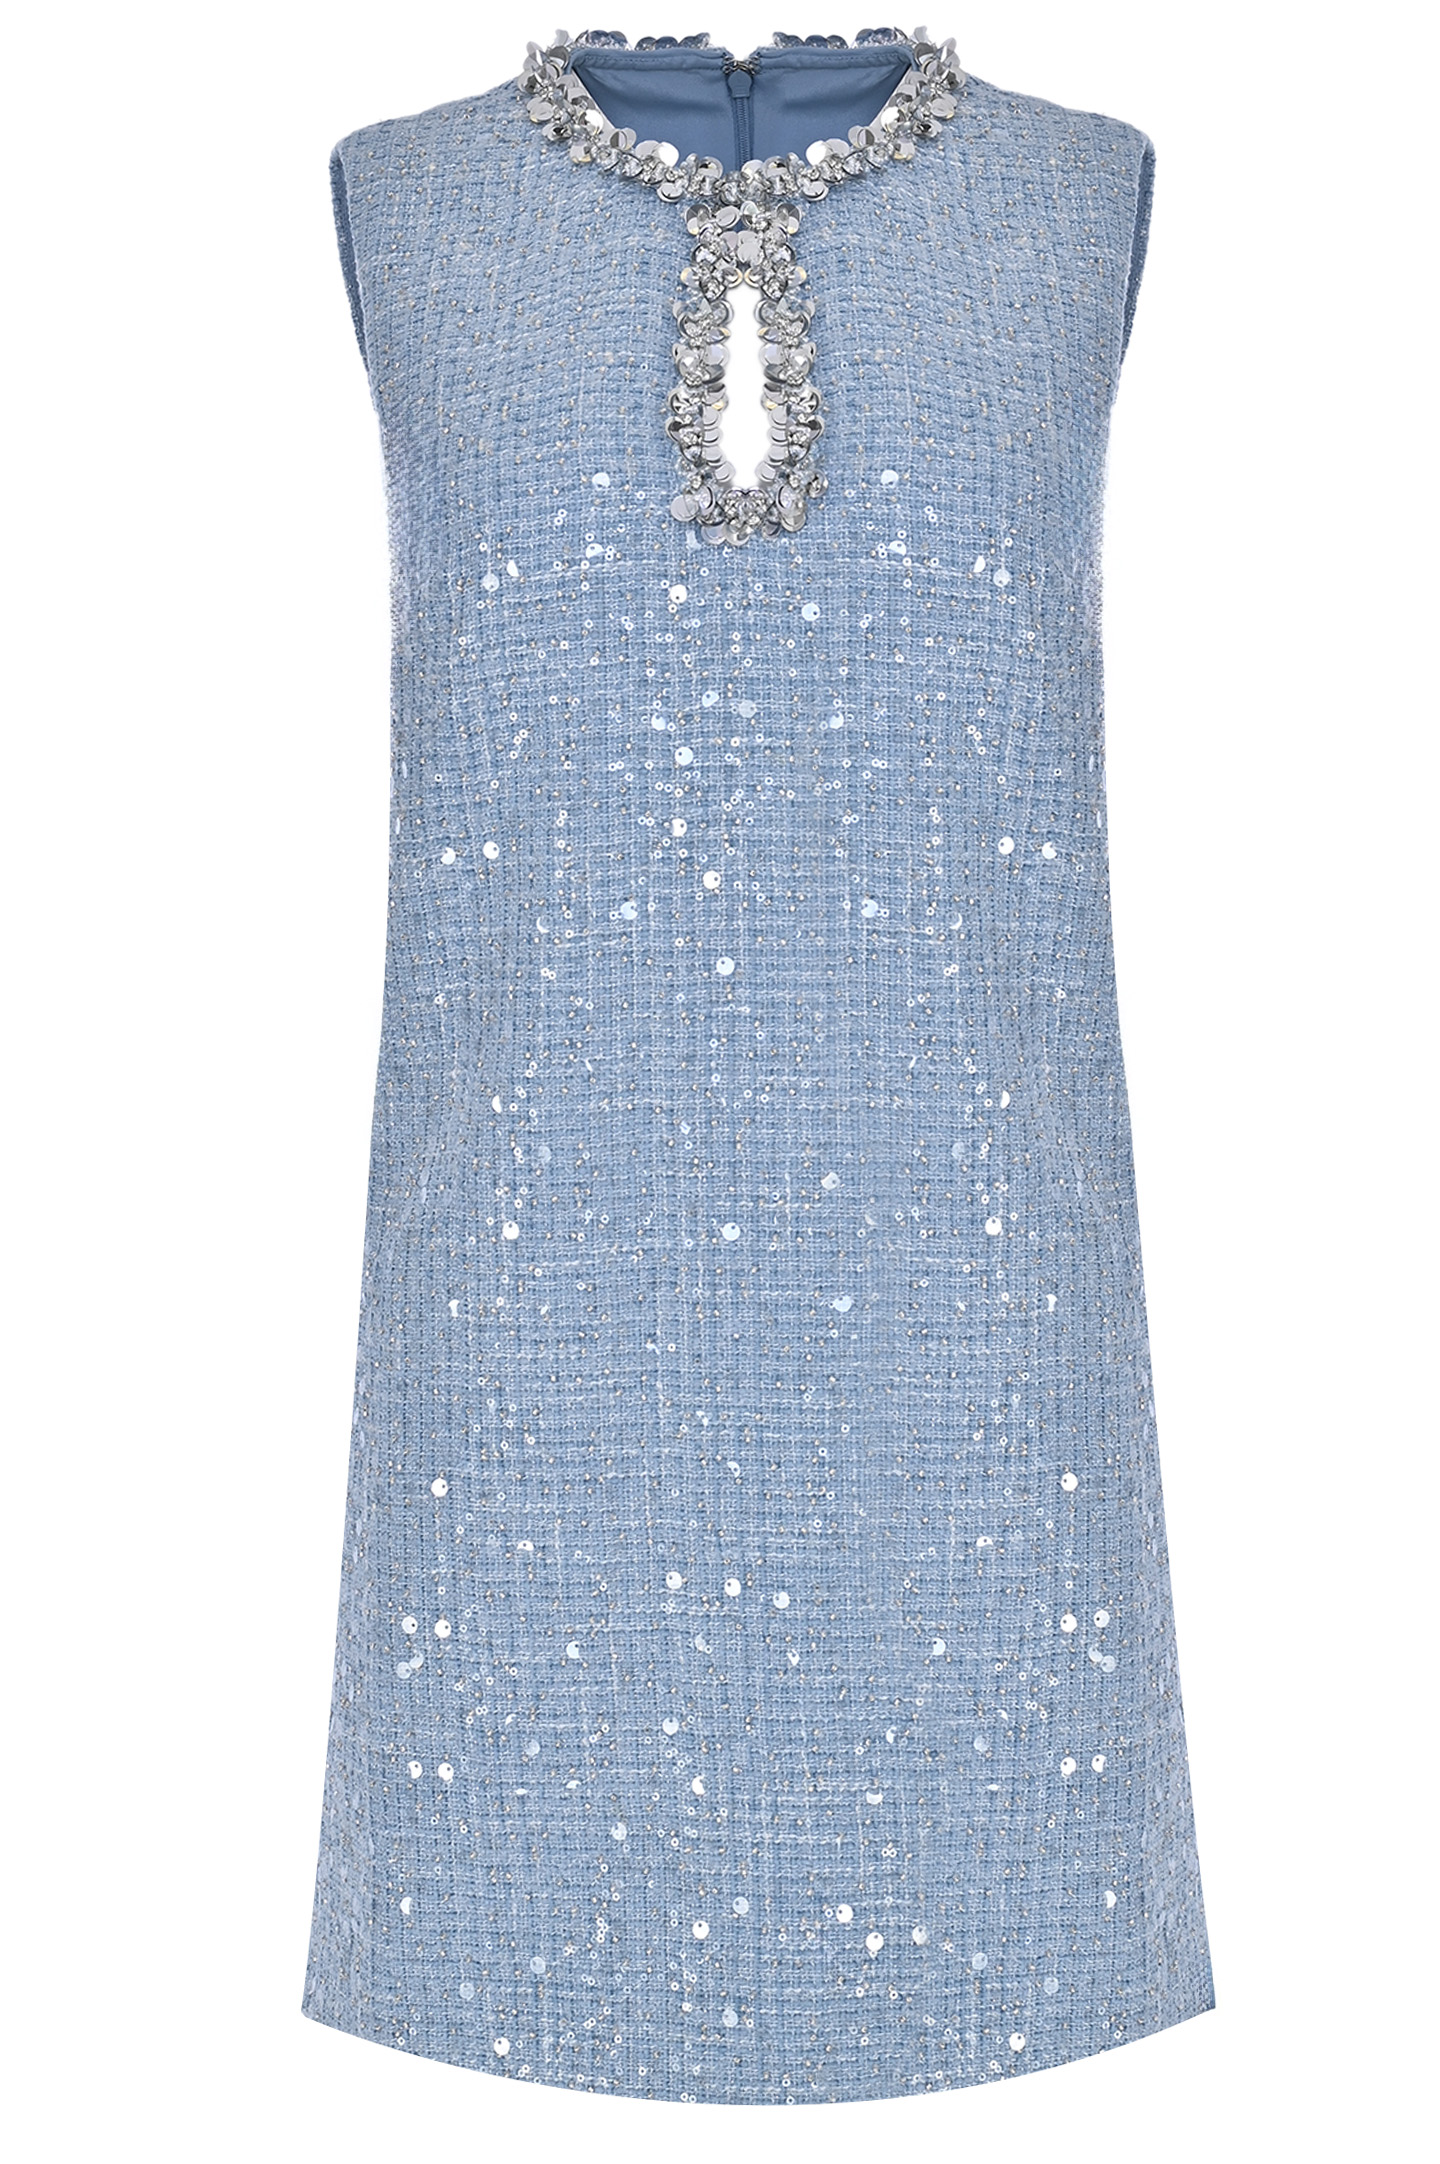 Платье SELF PORTRAIT RS24119SBL, цвет: Голубой, Женский